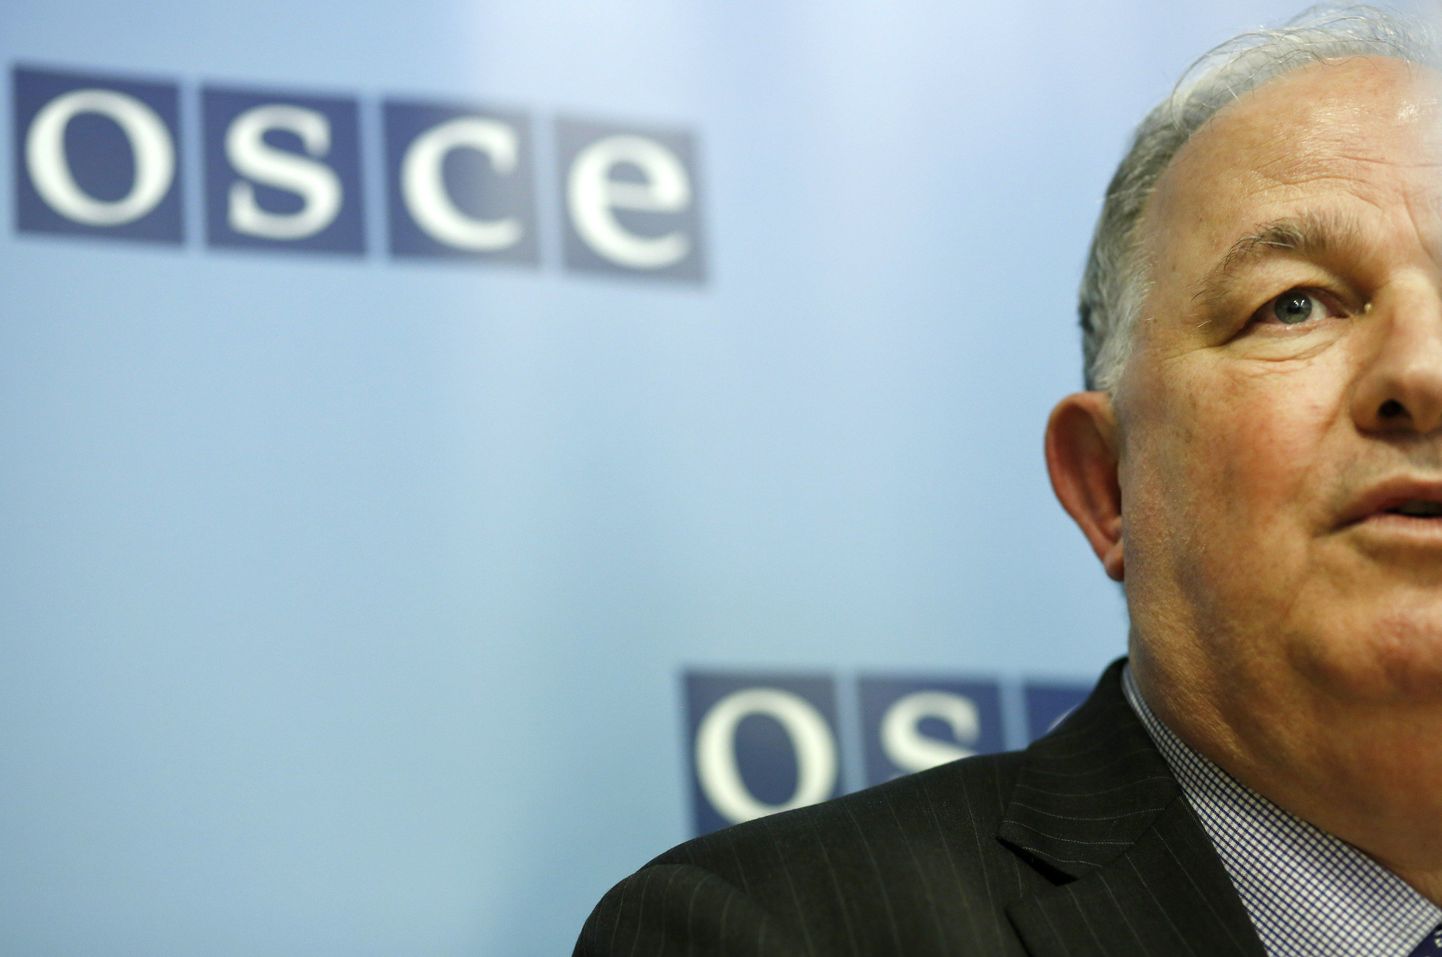 OSCE rahvusvahelise vaatlejate missiooni juht, endine Türgi diplomaat Ertuğrul Apakan.